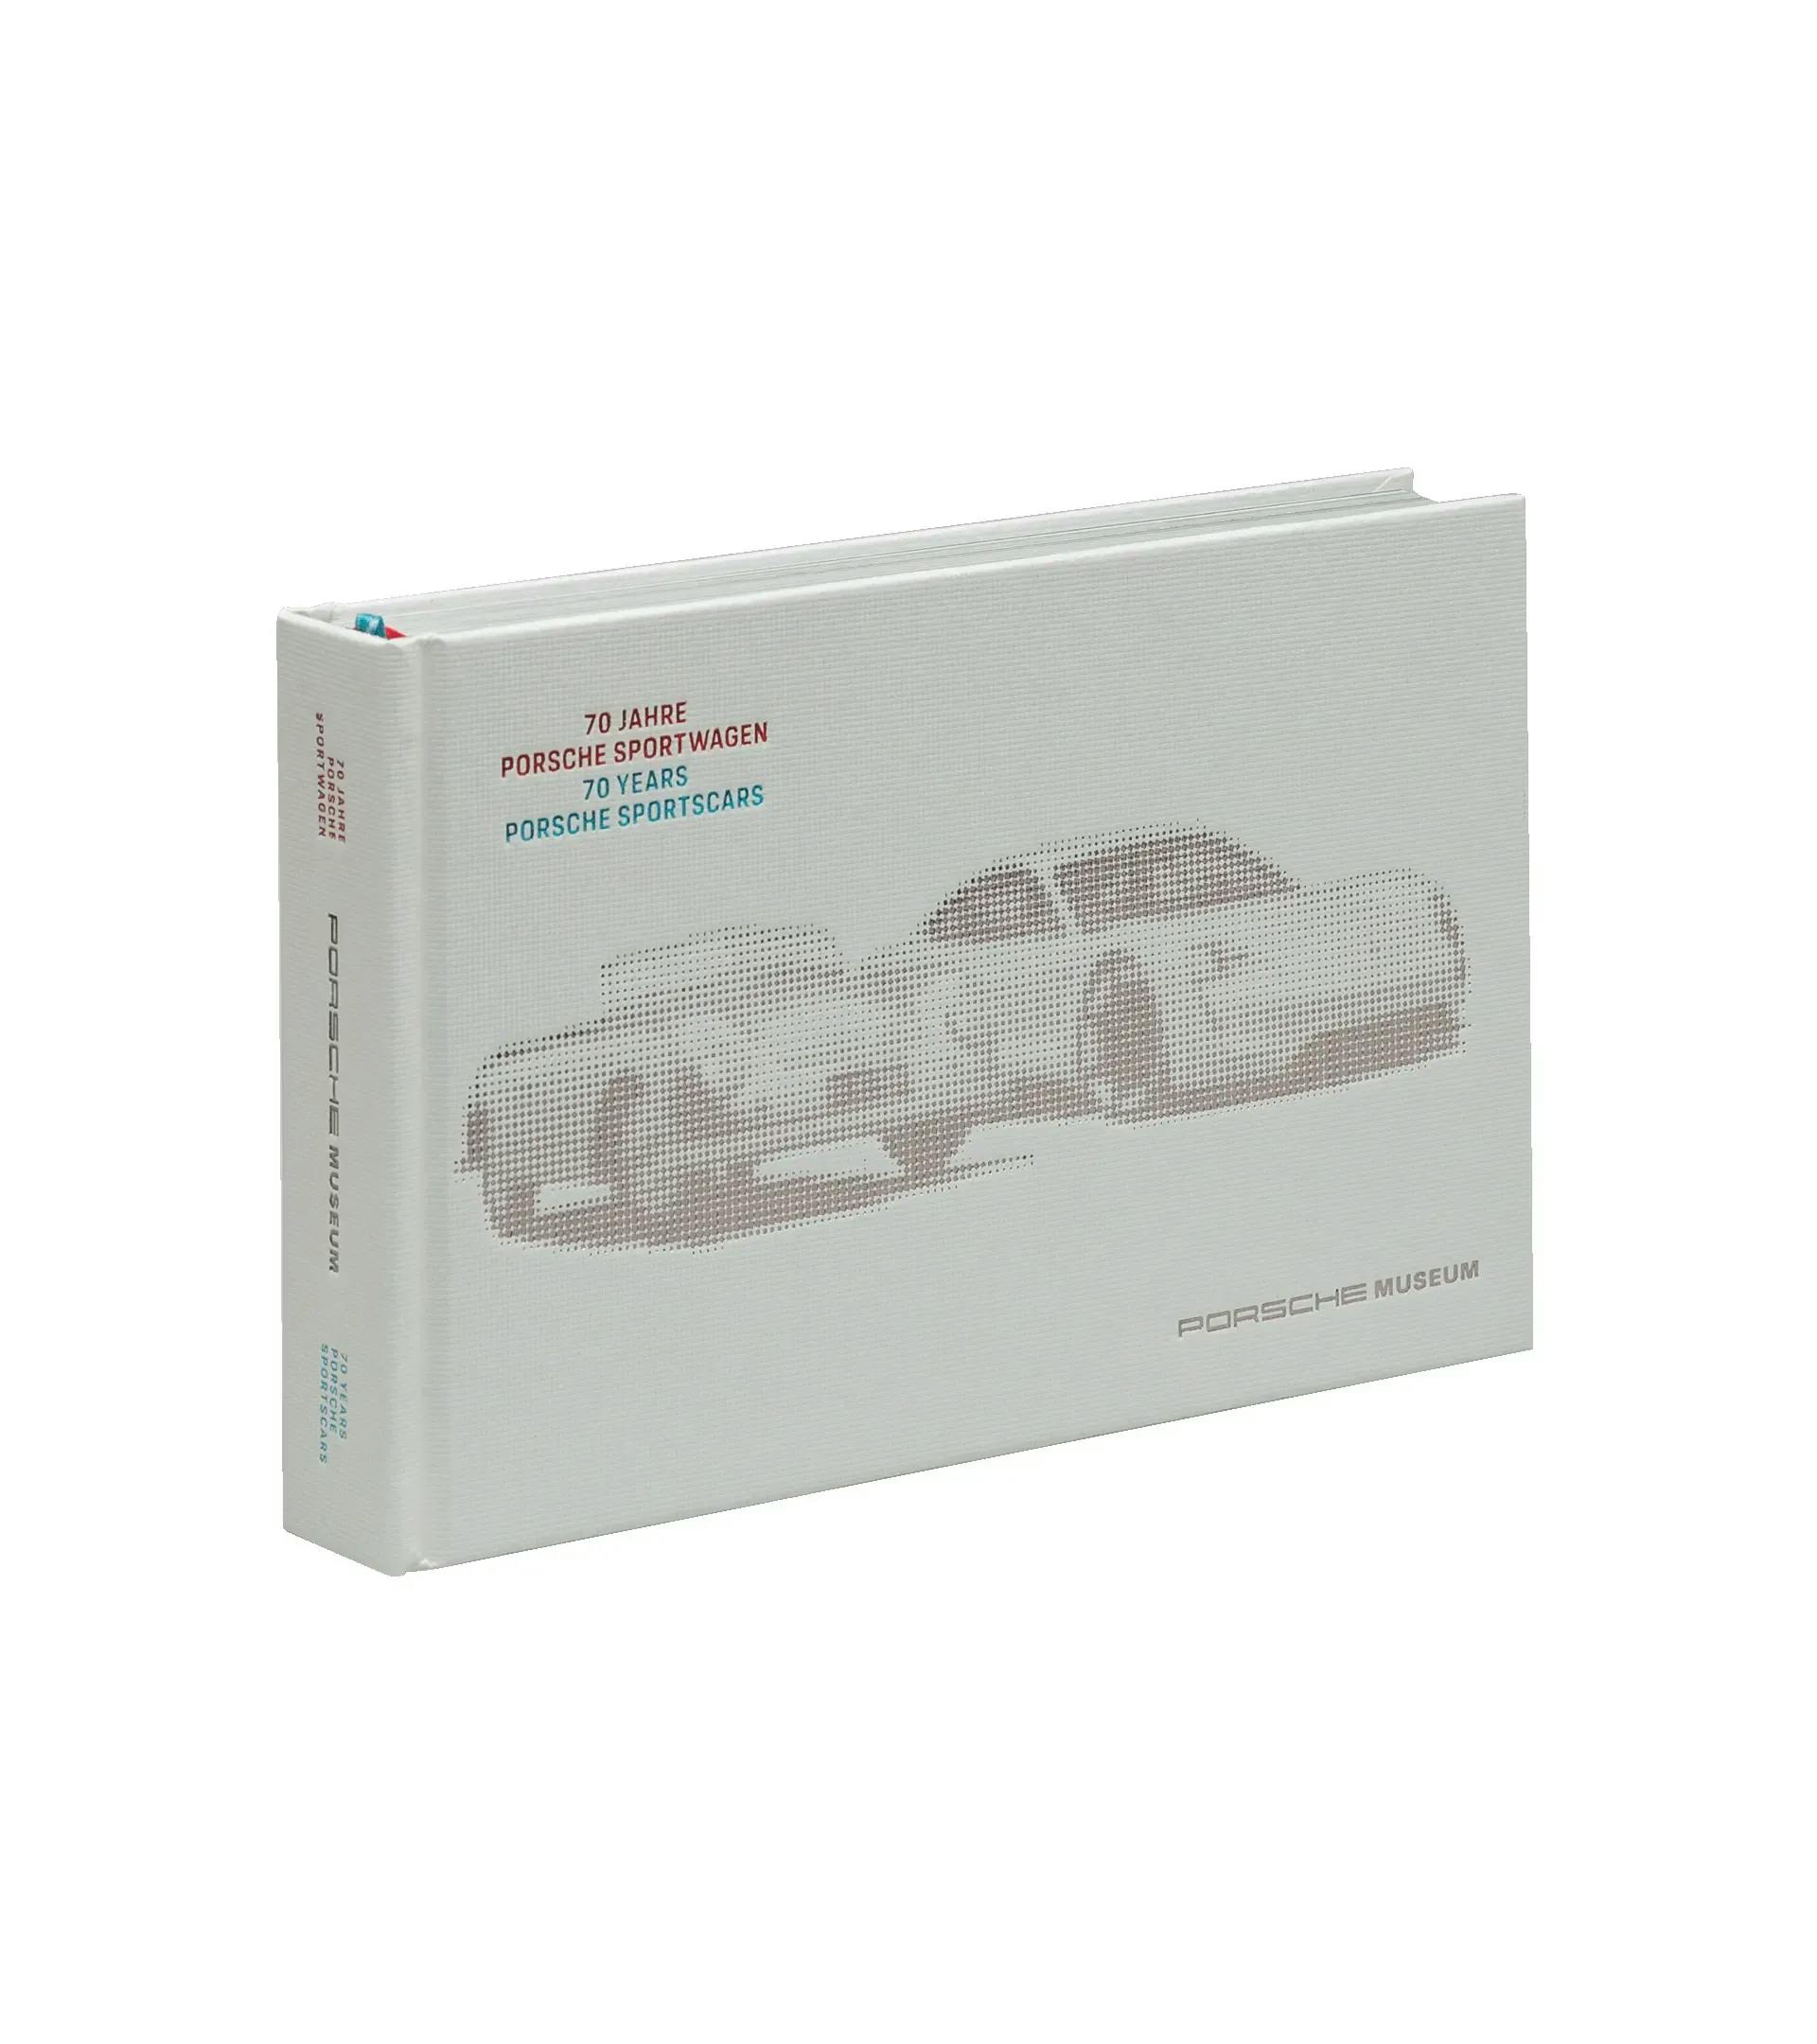 70 Jahre Porsche Sportwagen 1